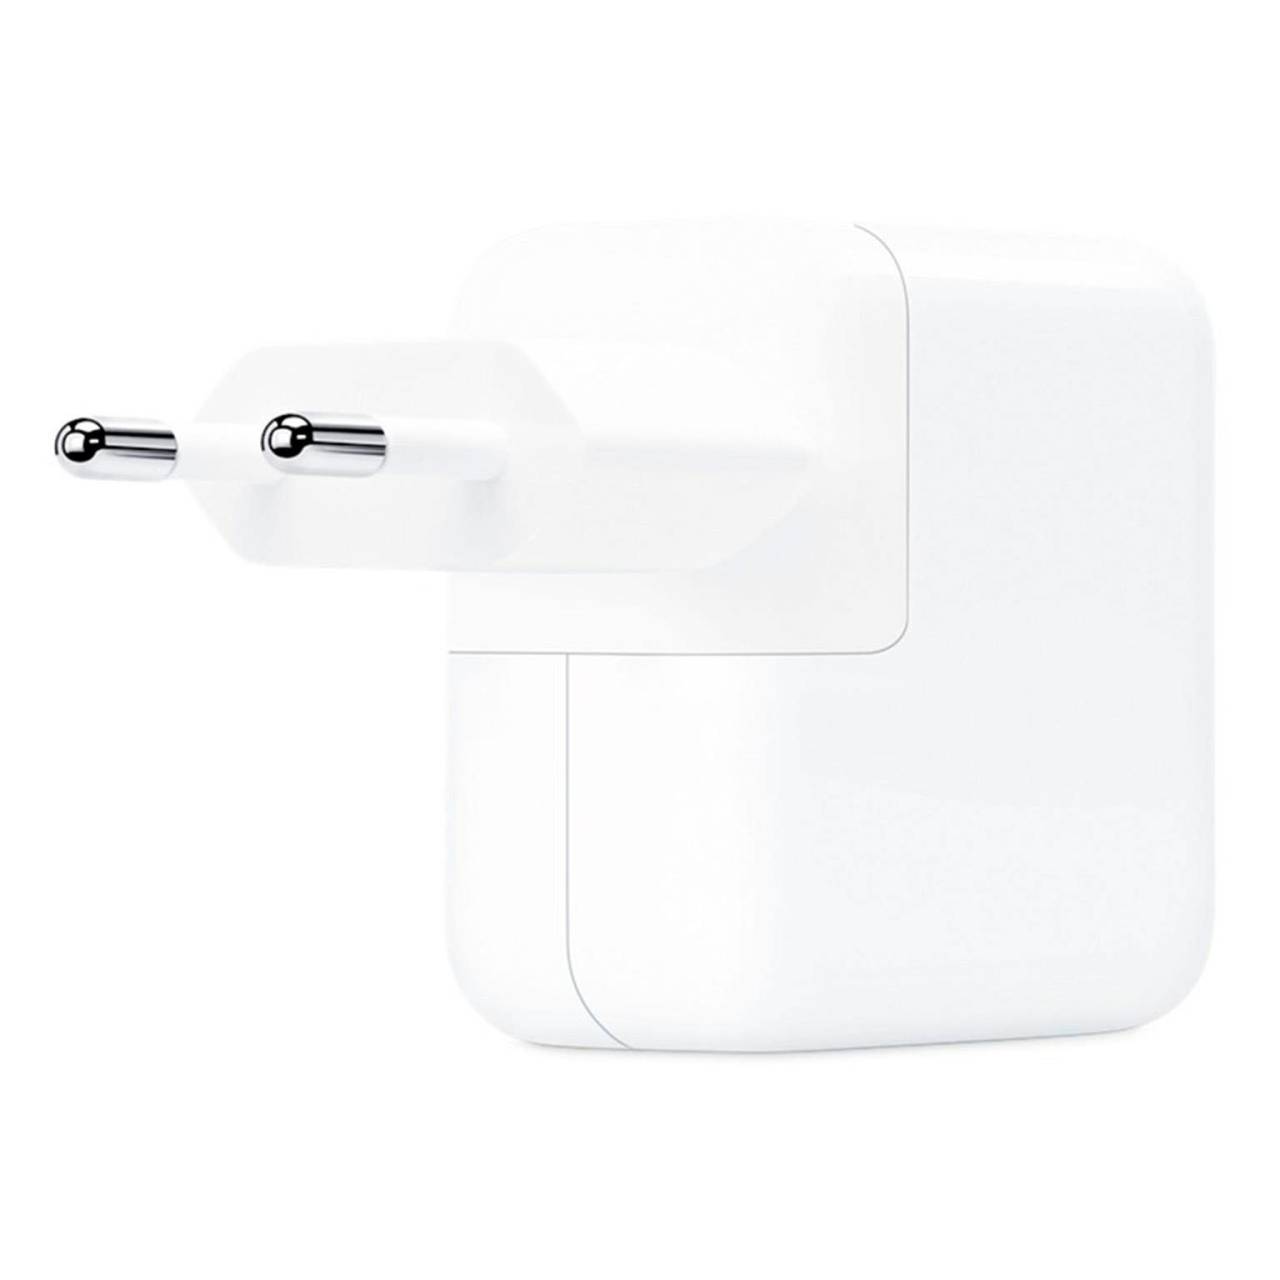 Apple Netzteil – USB-C Ladegerät für Smartphones und andere Geräte, kompatibel mit dem Reise-Adapter-Kit, 30W